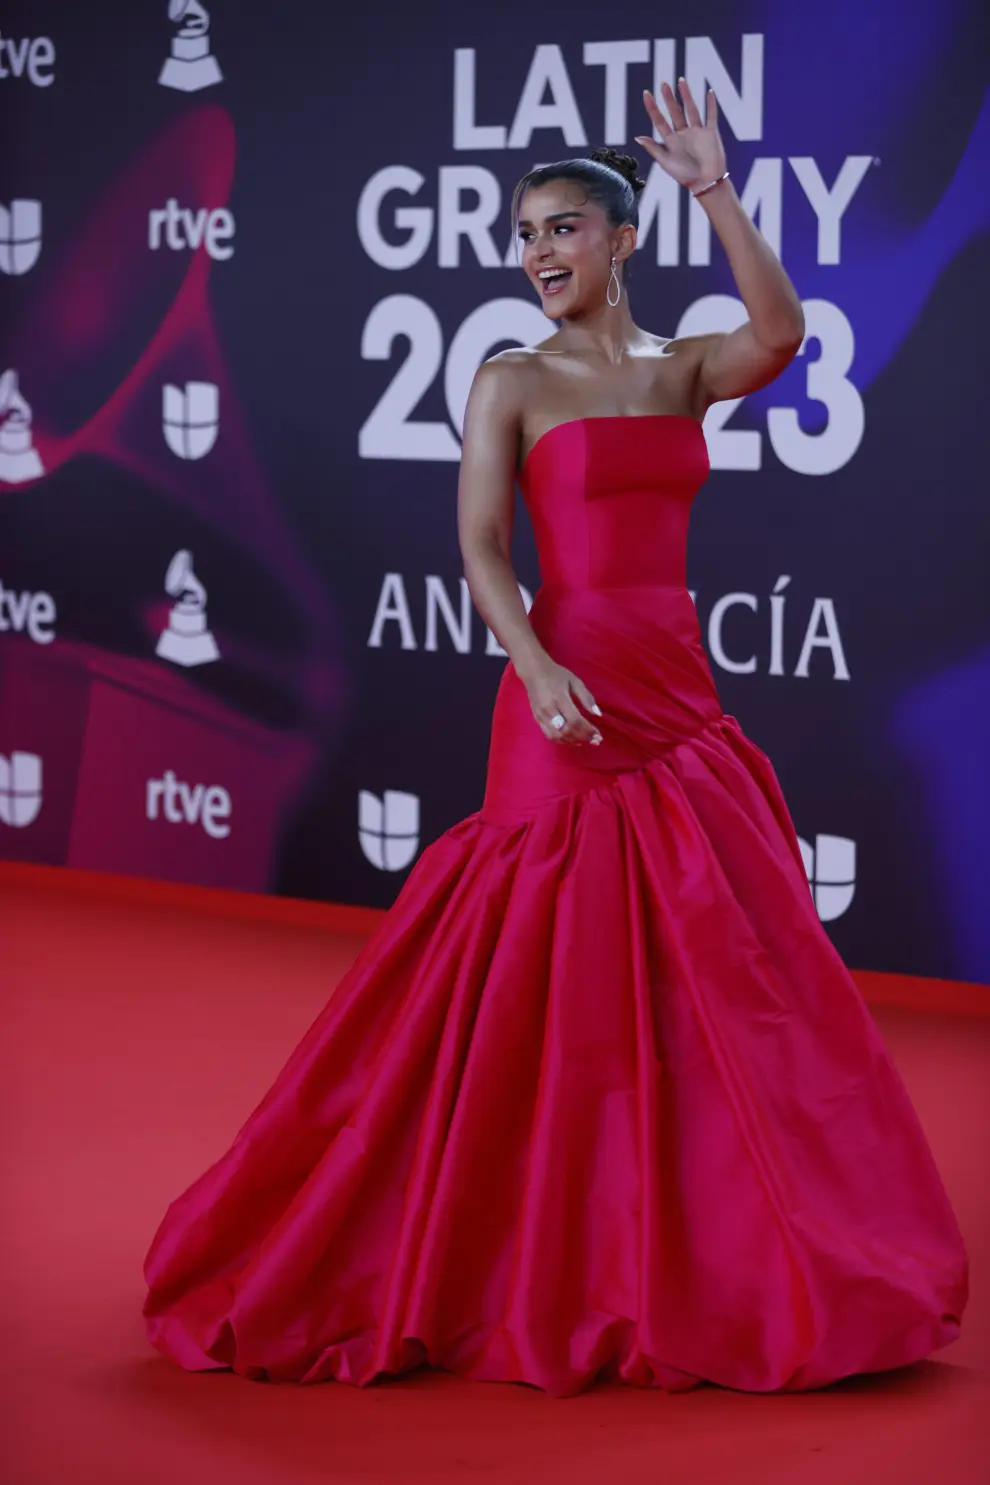 La modelo dominicana Clarissa Molina posa durante el photocall previo a la gala de entrega de los Latin Grammy 2023